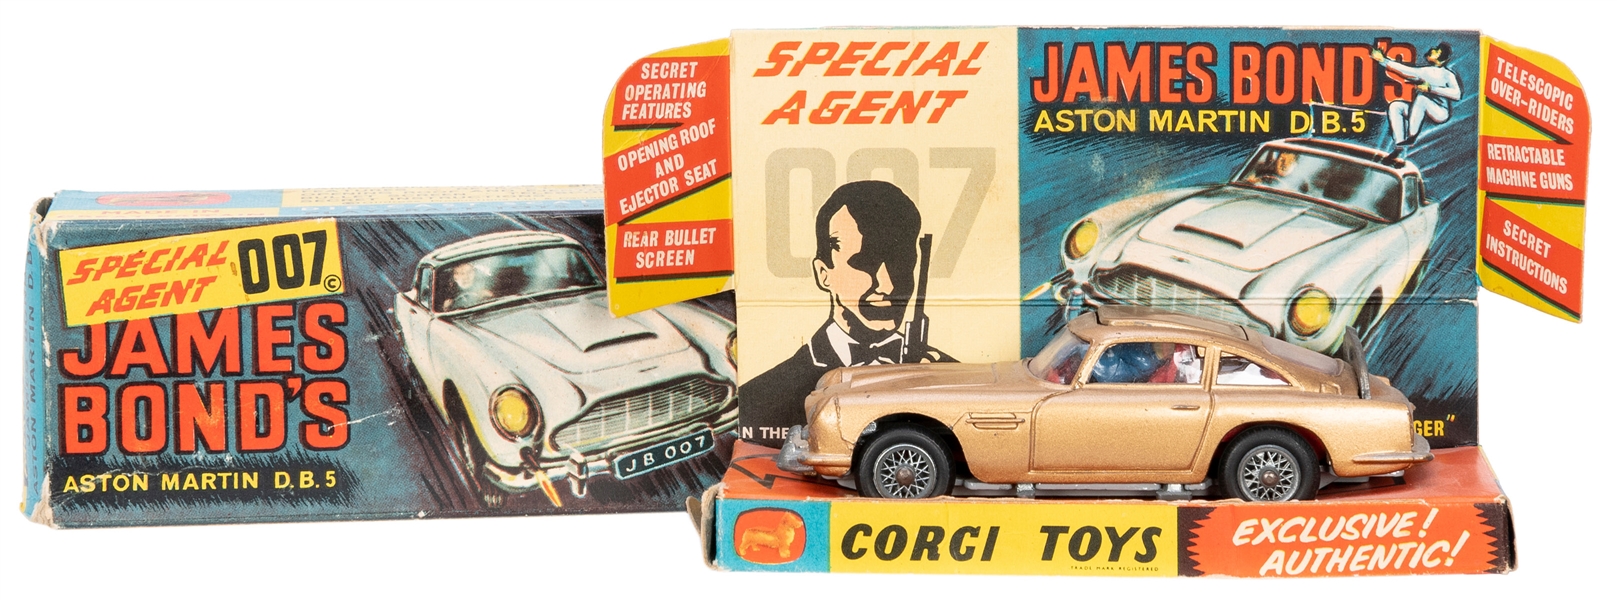  Corgi Special Agent 007 James Bond’s Aston Martin D.B. 5. 1...